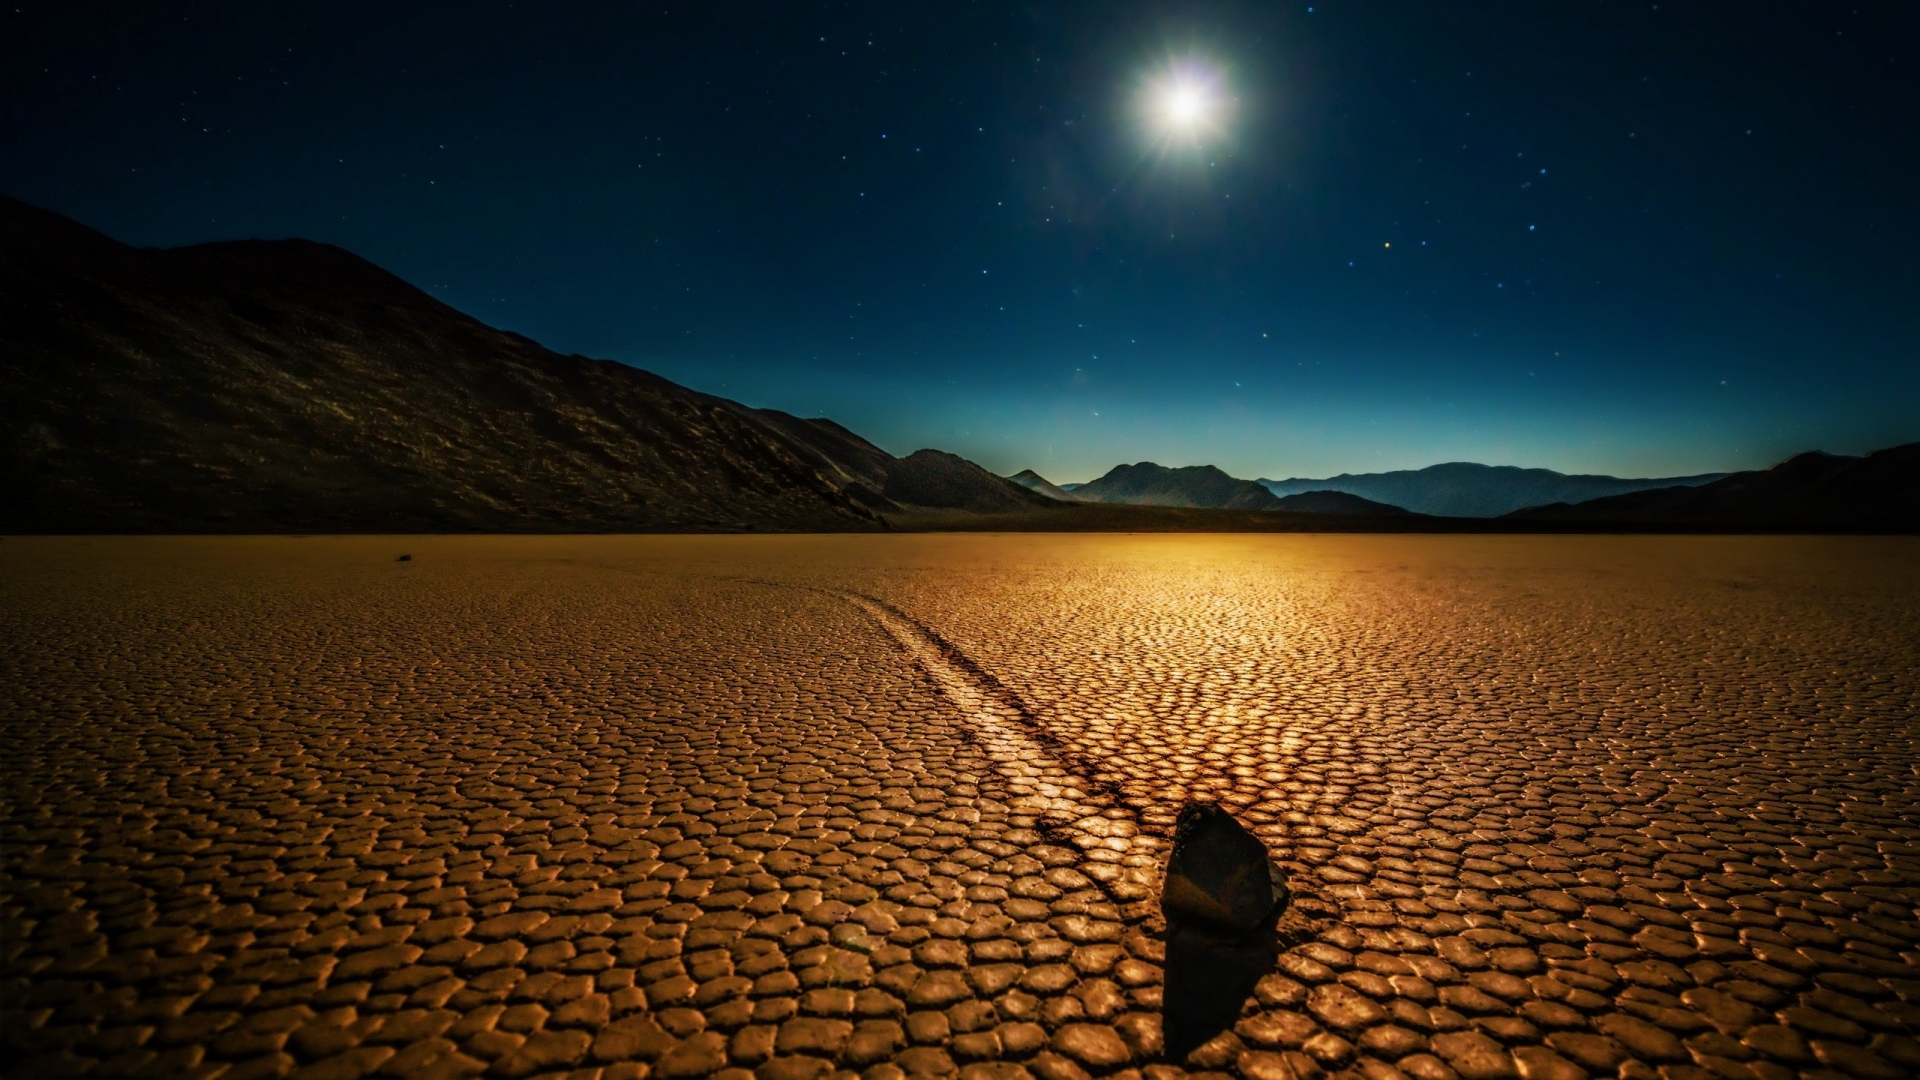 Desert Night Landscape for 1920 x 1080 HDTV 1080p resolution